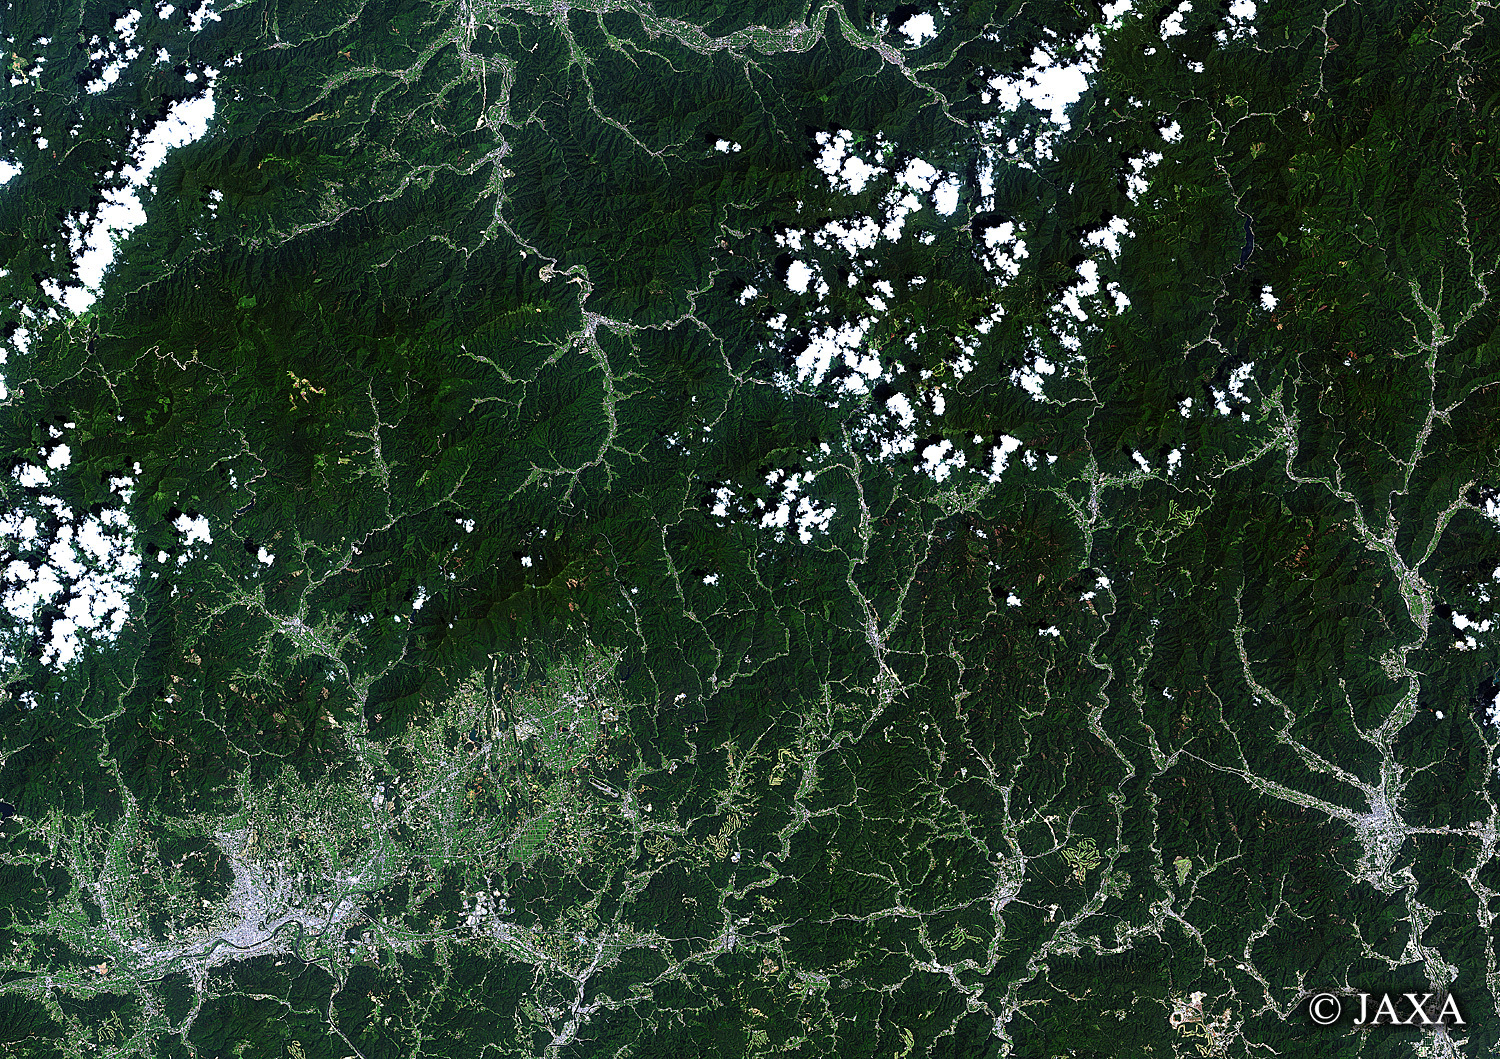 だいちから見た日本の都市 津山市:衛星画像